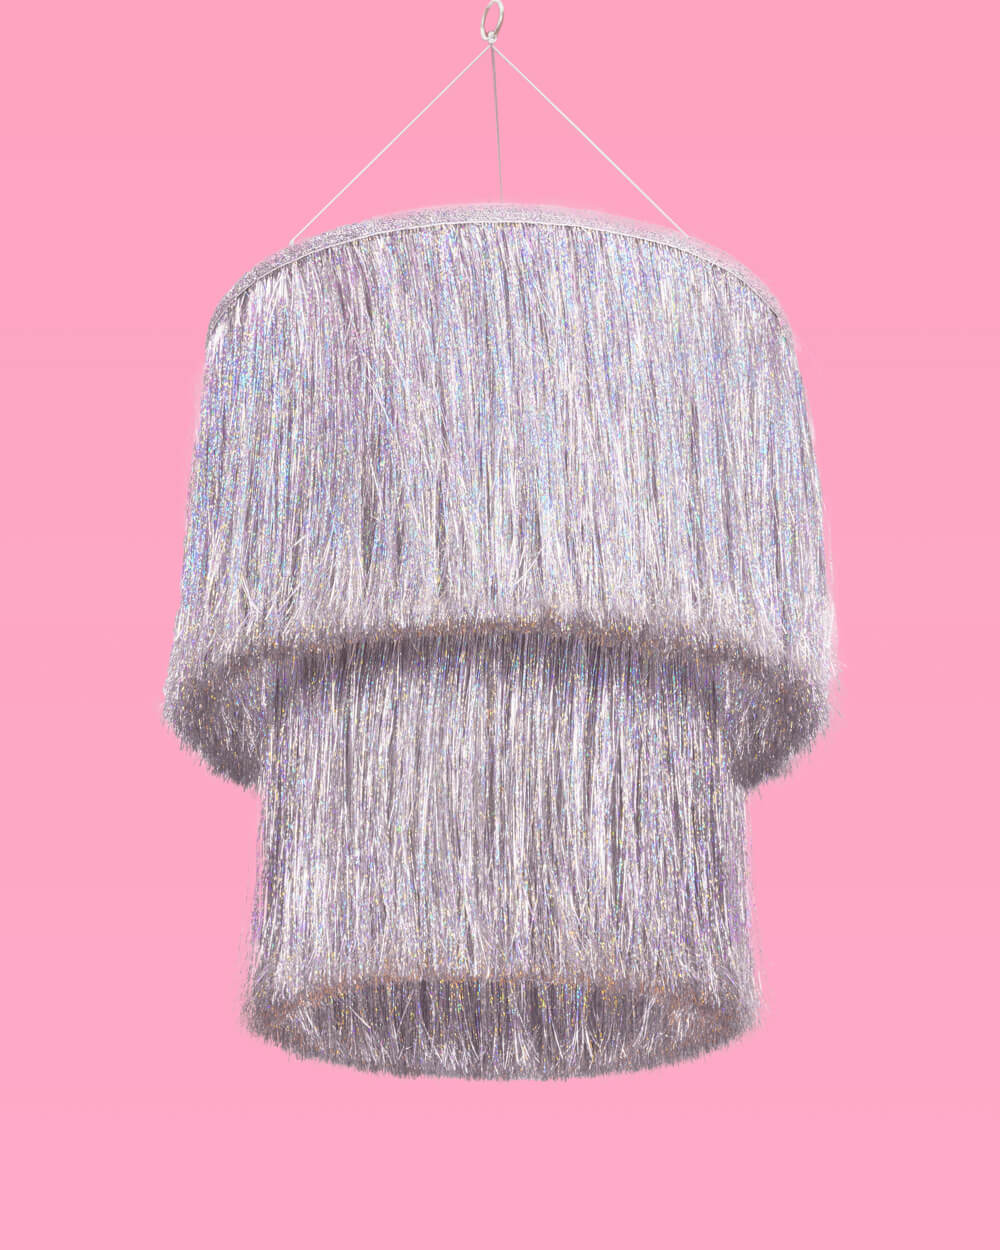 Shimmer Chandelier - iridescent foil chandelier